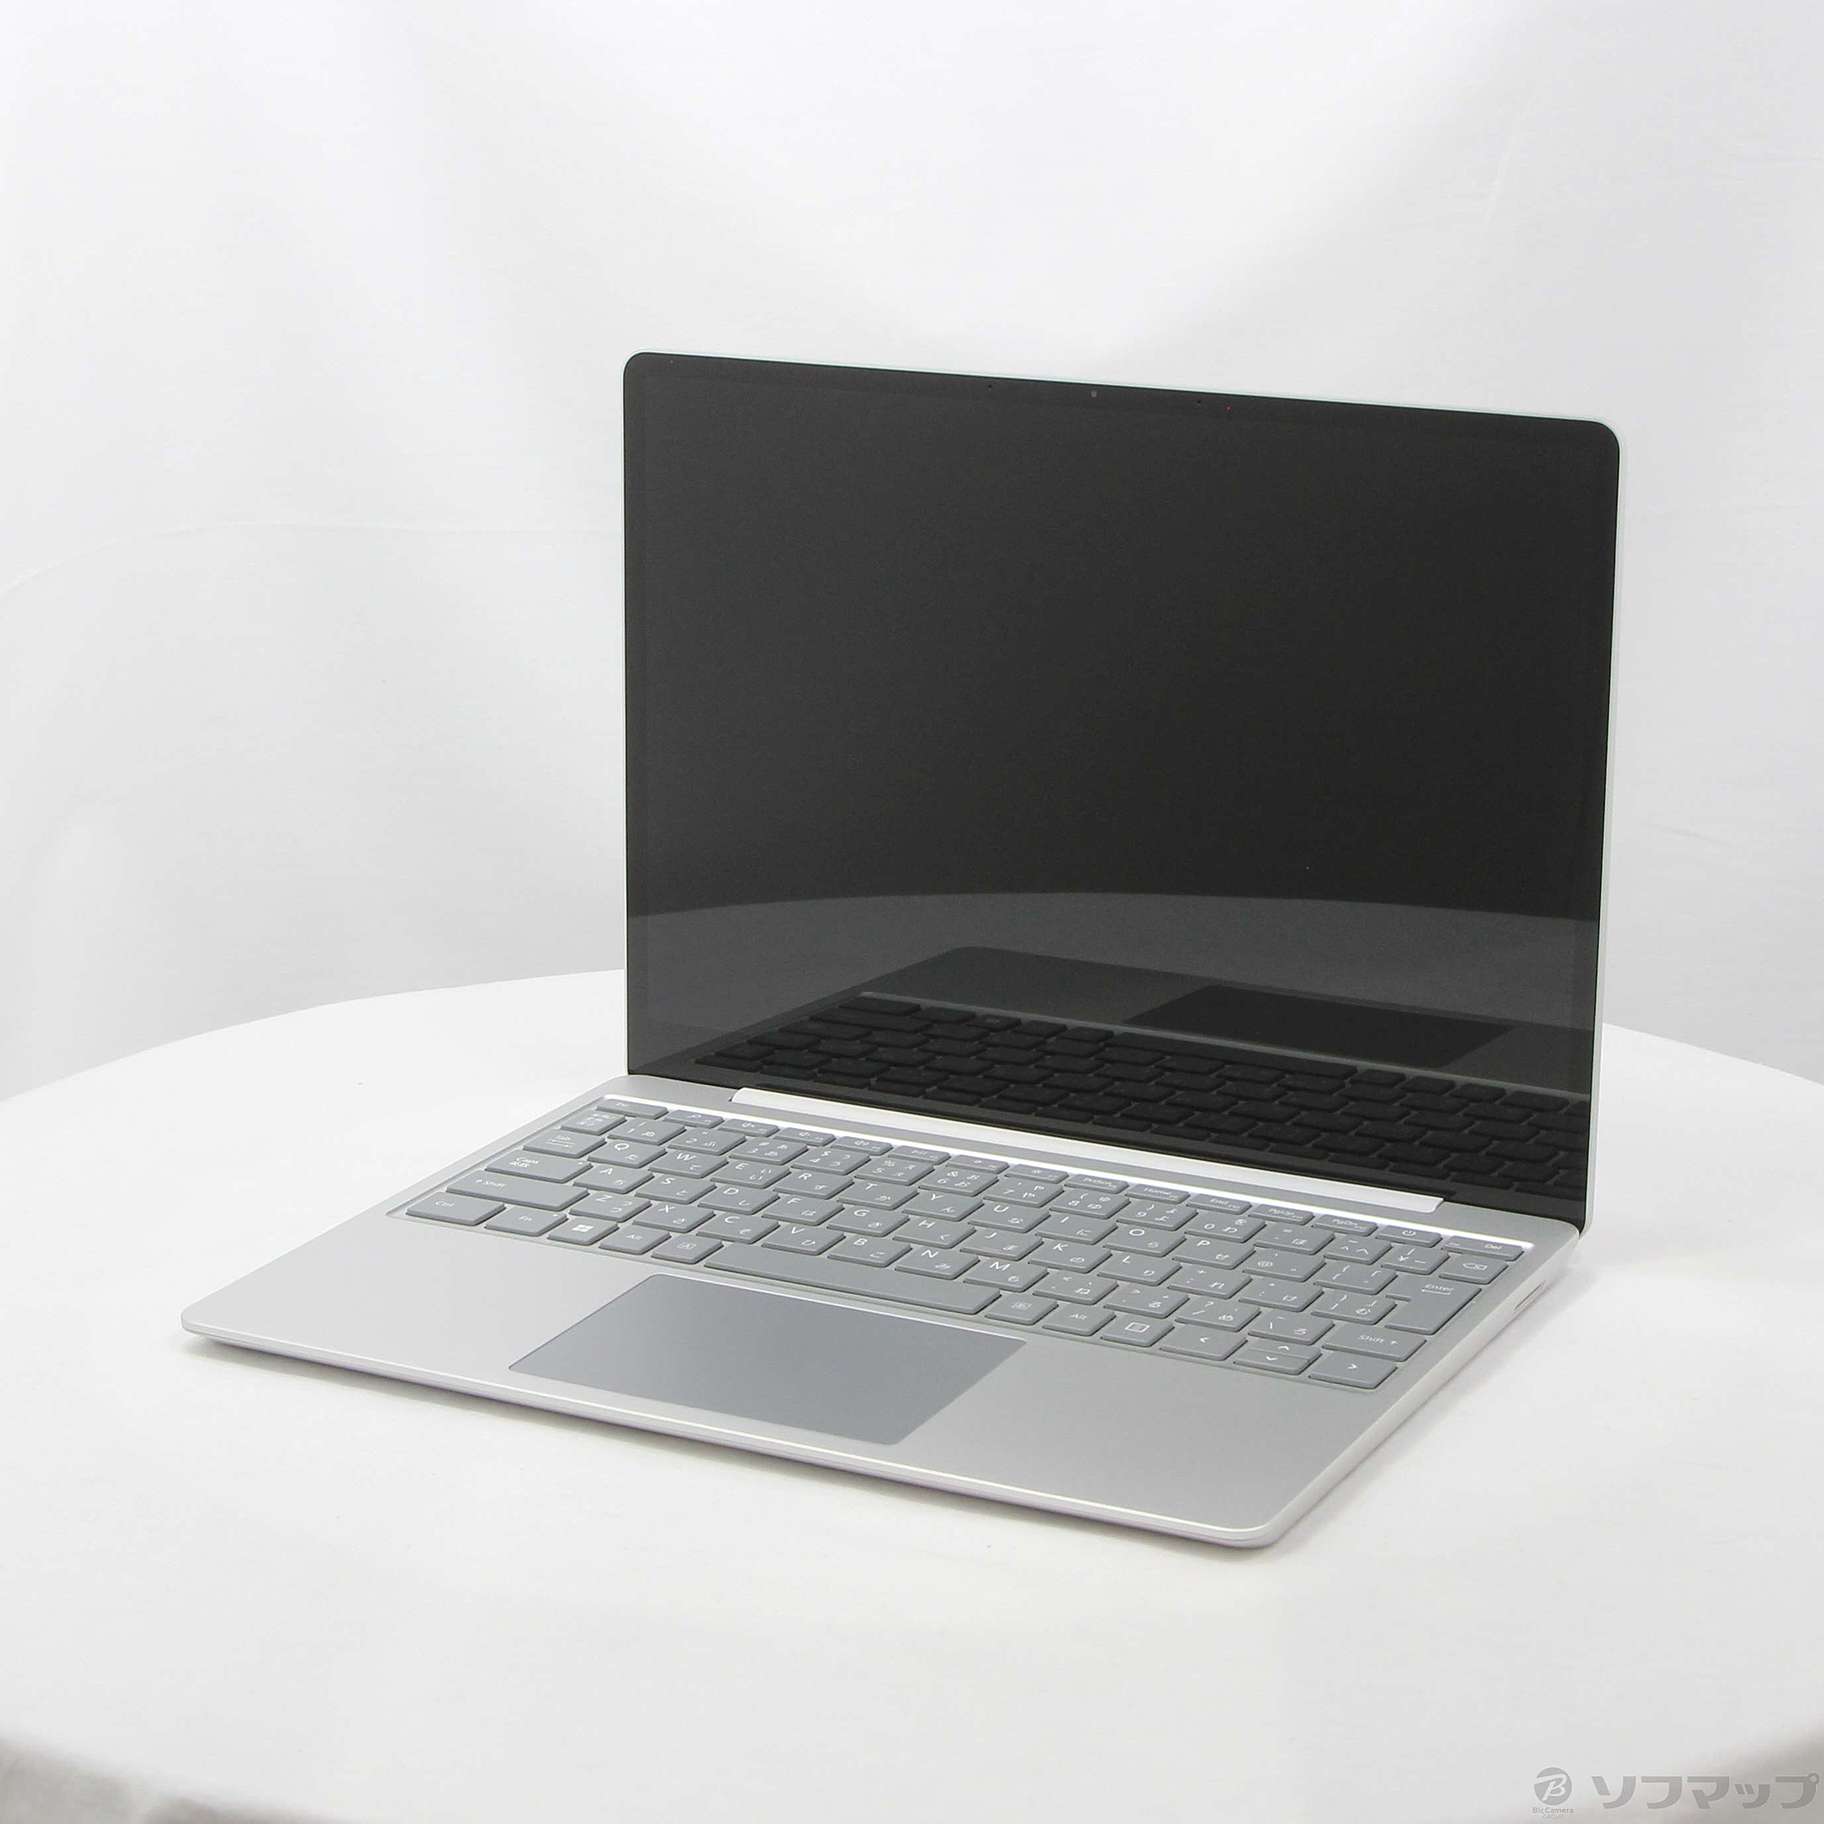 〔展示品〕 Surface Laptop Go 3 〔Core i5／8GB／SSD128GB〕 XJB-00004 プラチナ